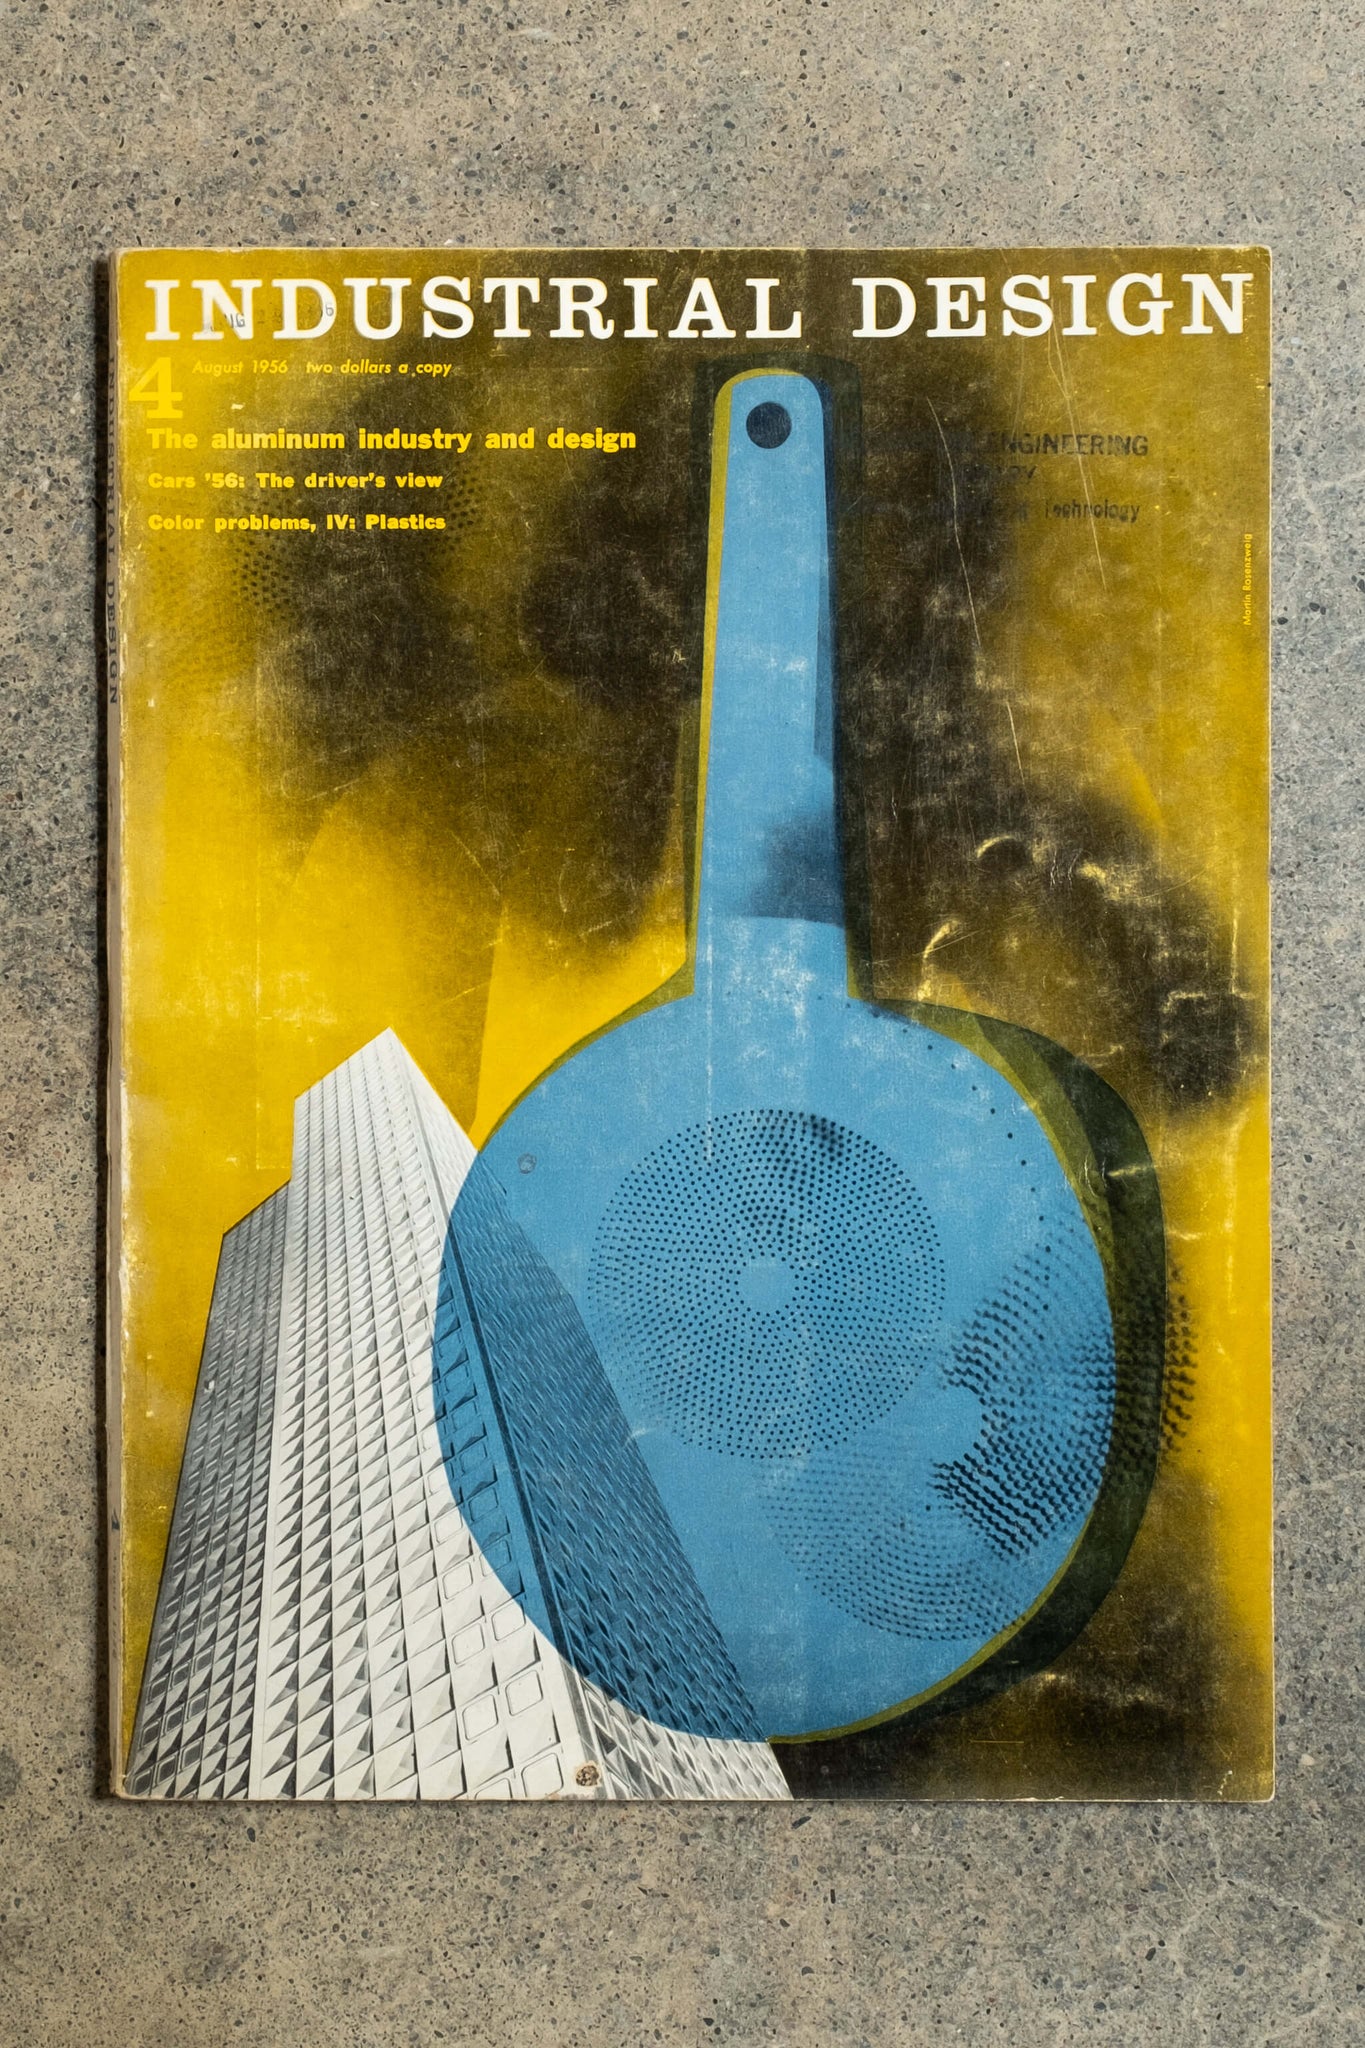 Industrial Design Vintage Magazine, August 1956